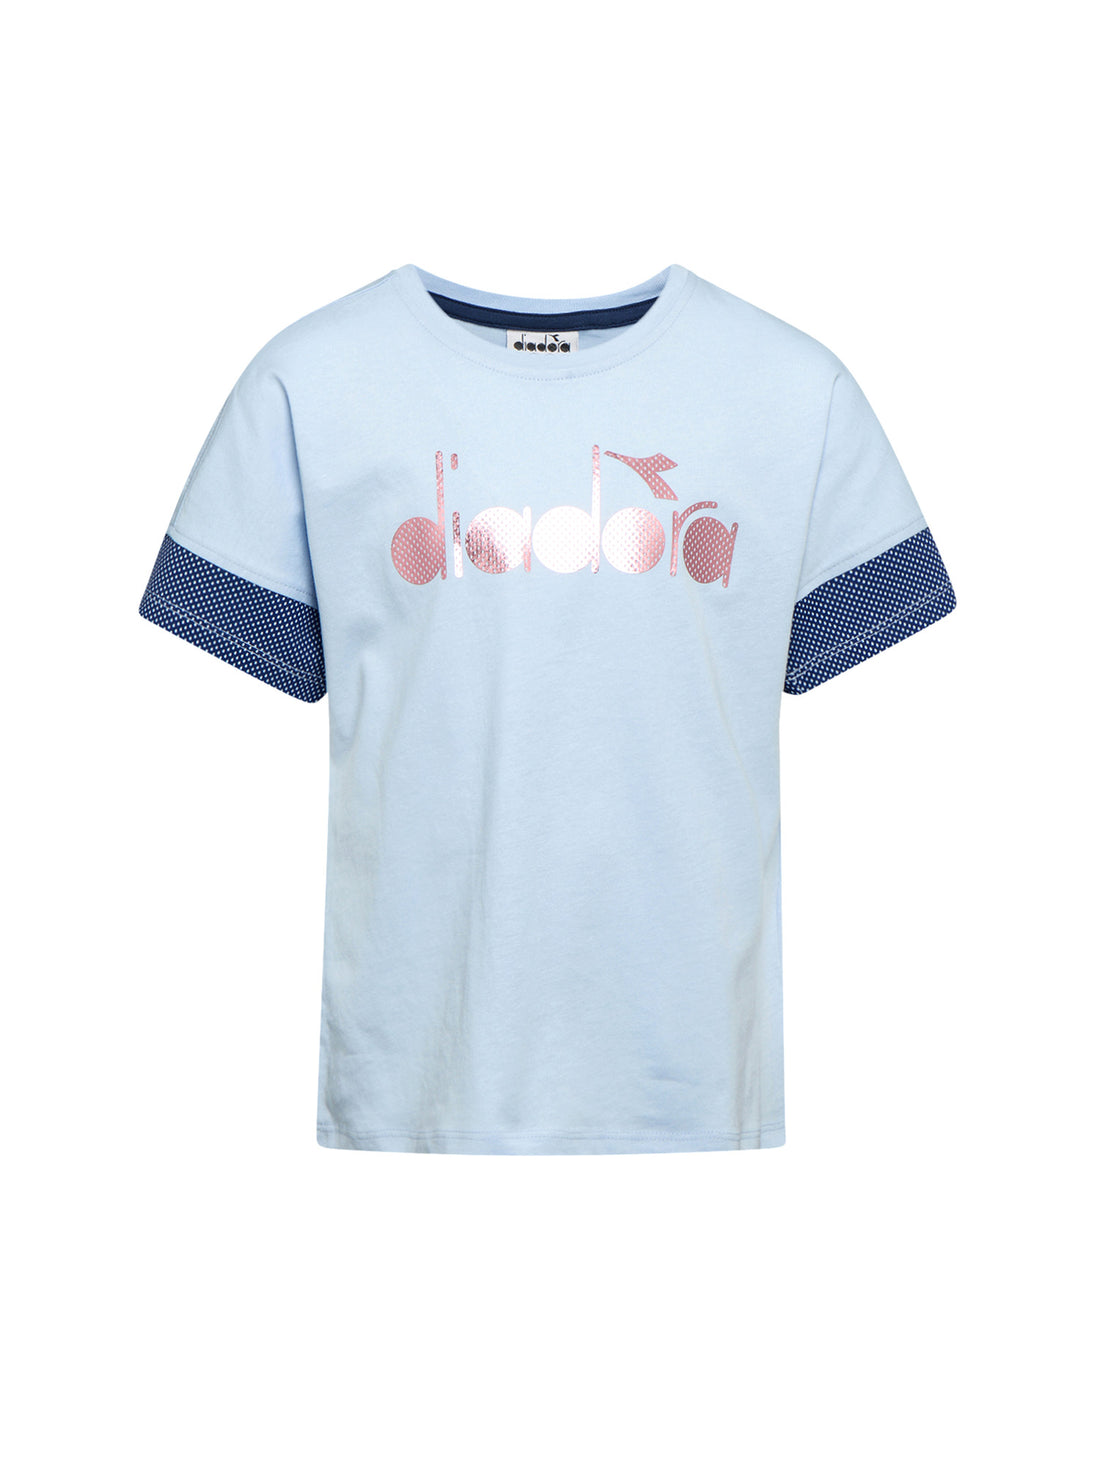 T-shirt Blu Diadora